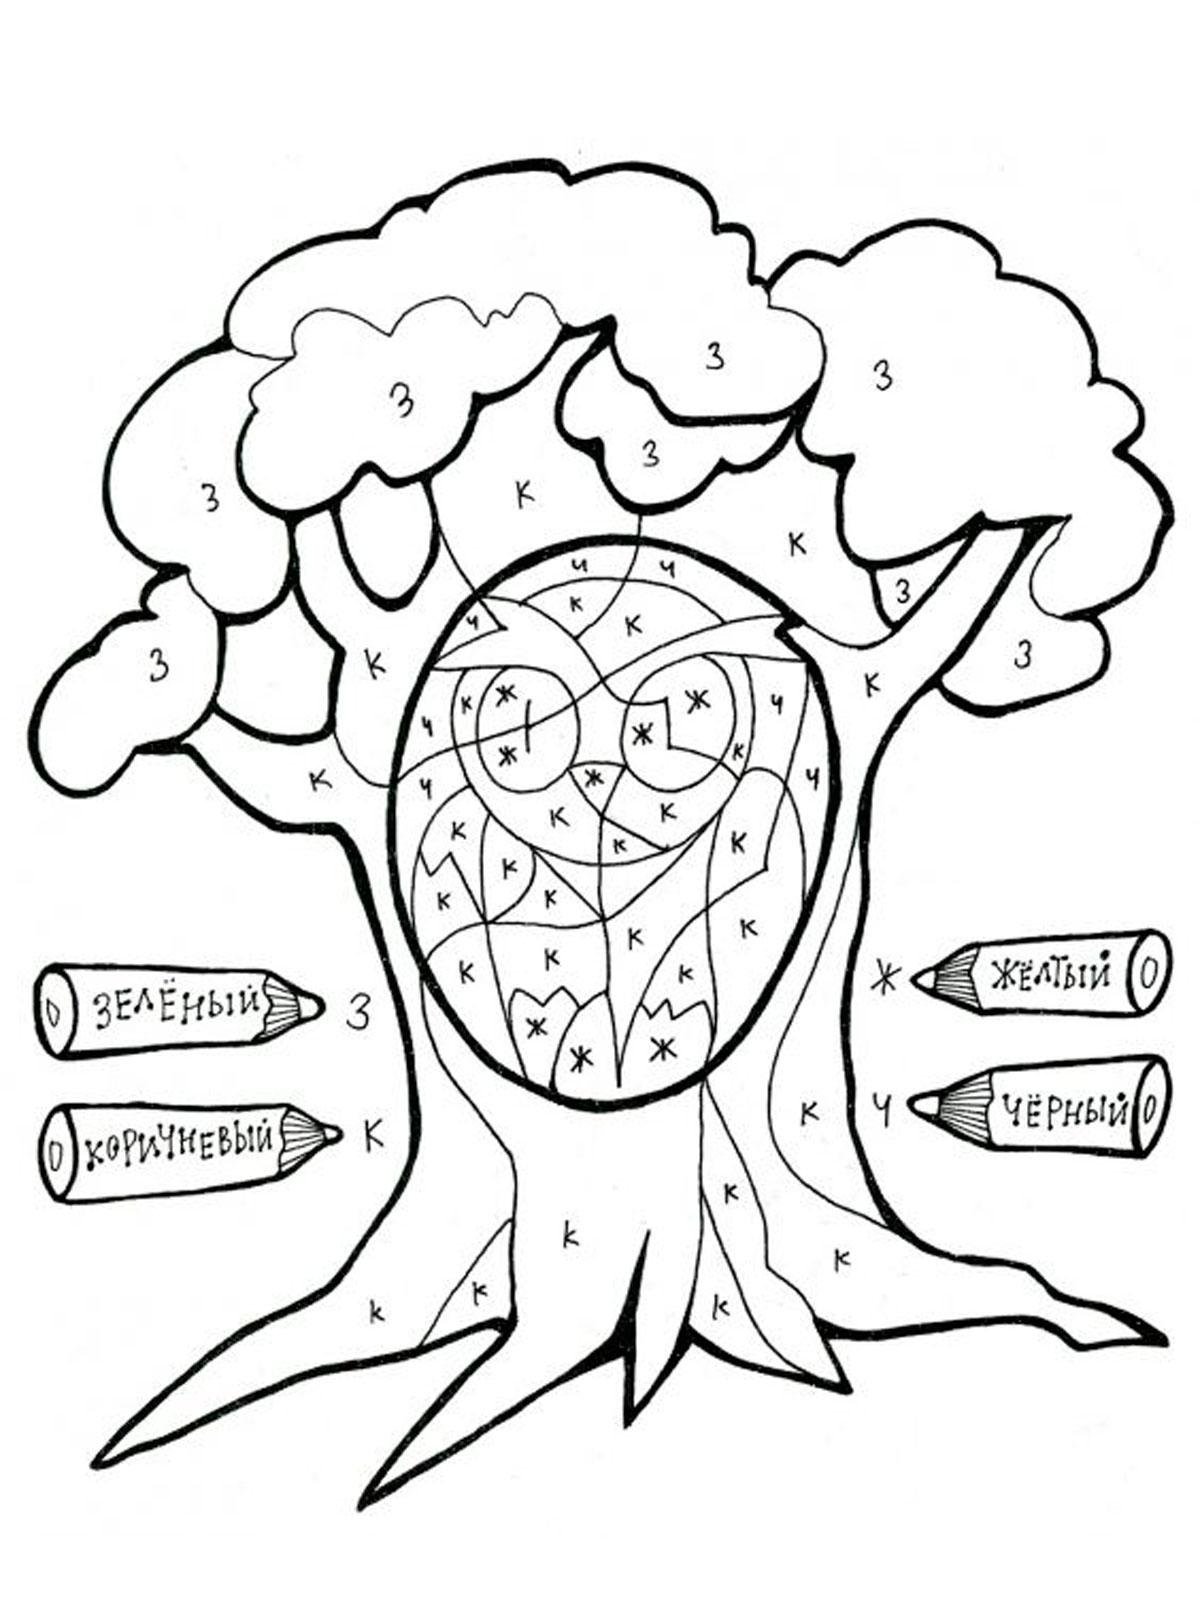 Экология практические задания. Деревья задания для дошкольников. Раскраски с заданиями деревья. Дерево раскраска для детей. Раскраски для детей с заданиями.